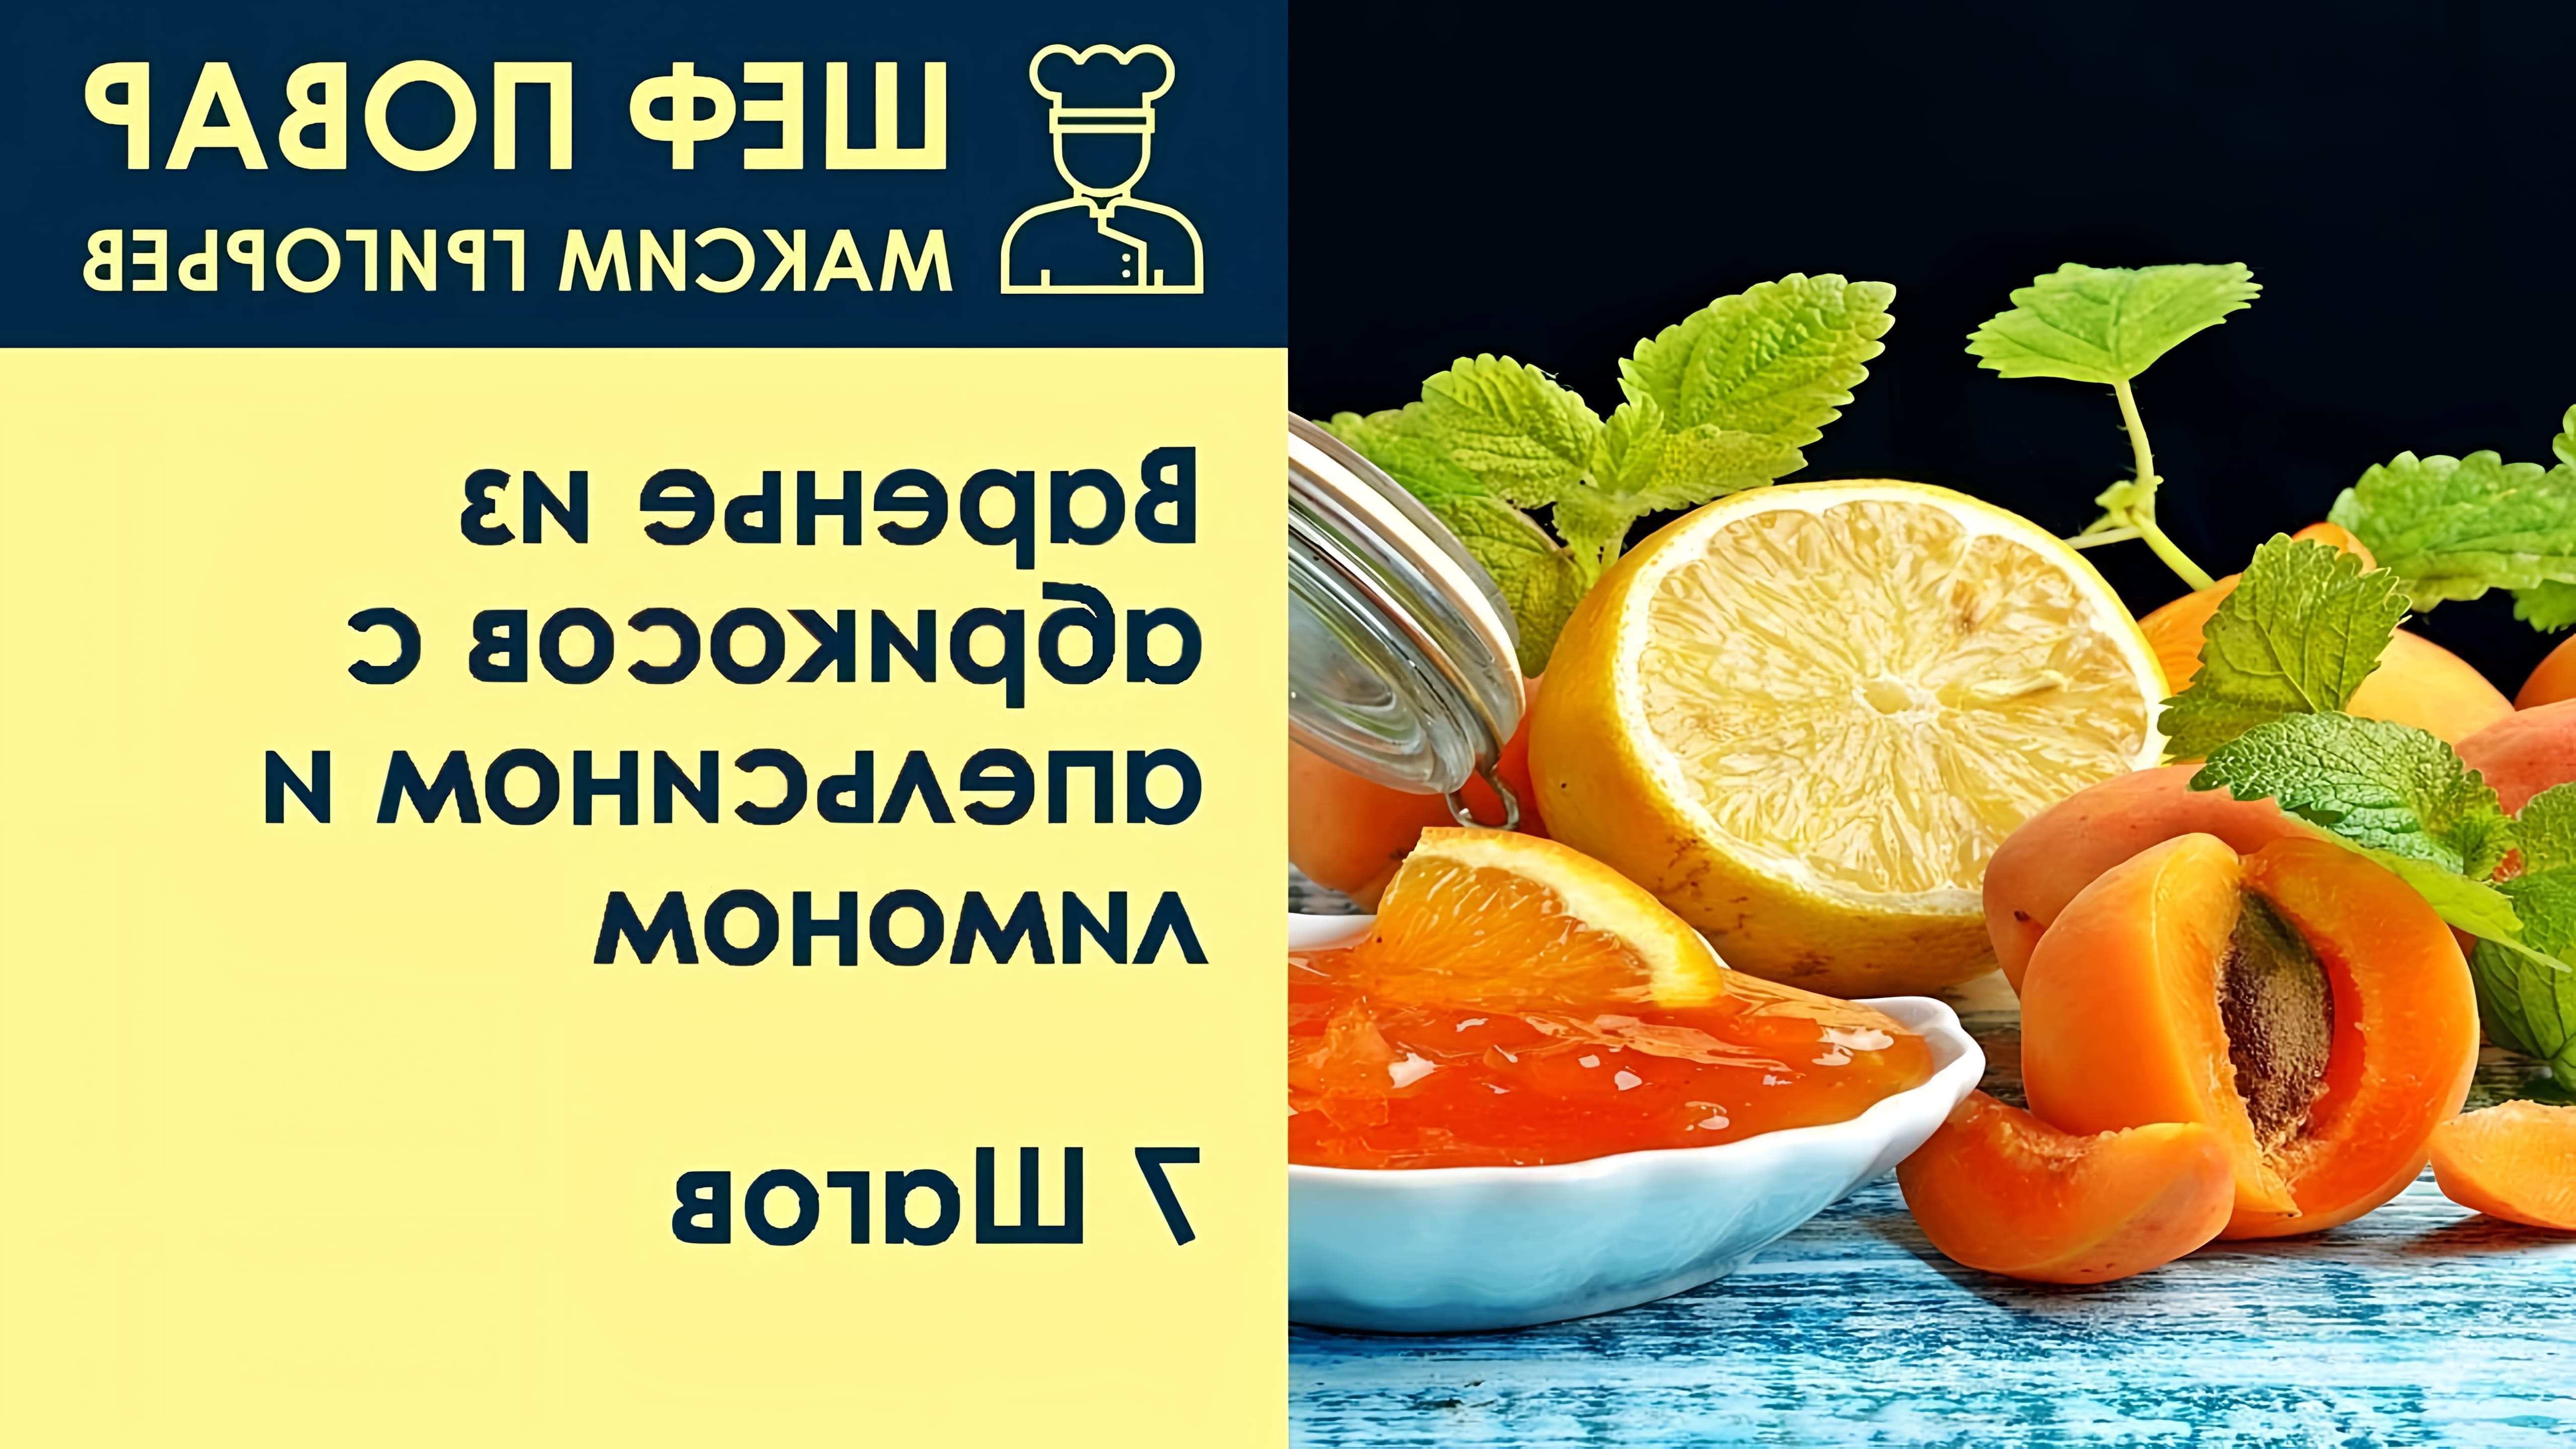 В данном видео шеф-повар Максим Григорьев демонстрирует рецепт приготовления варенья из абрикосов с апельсином и лимоном